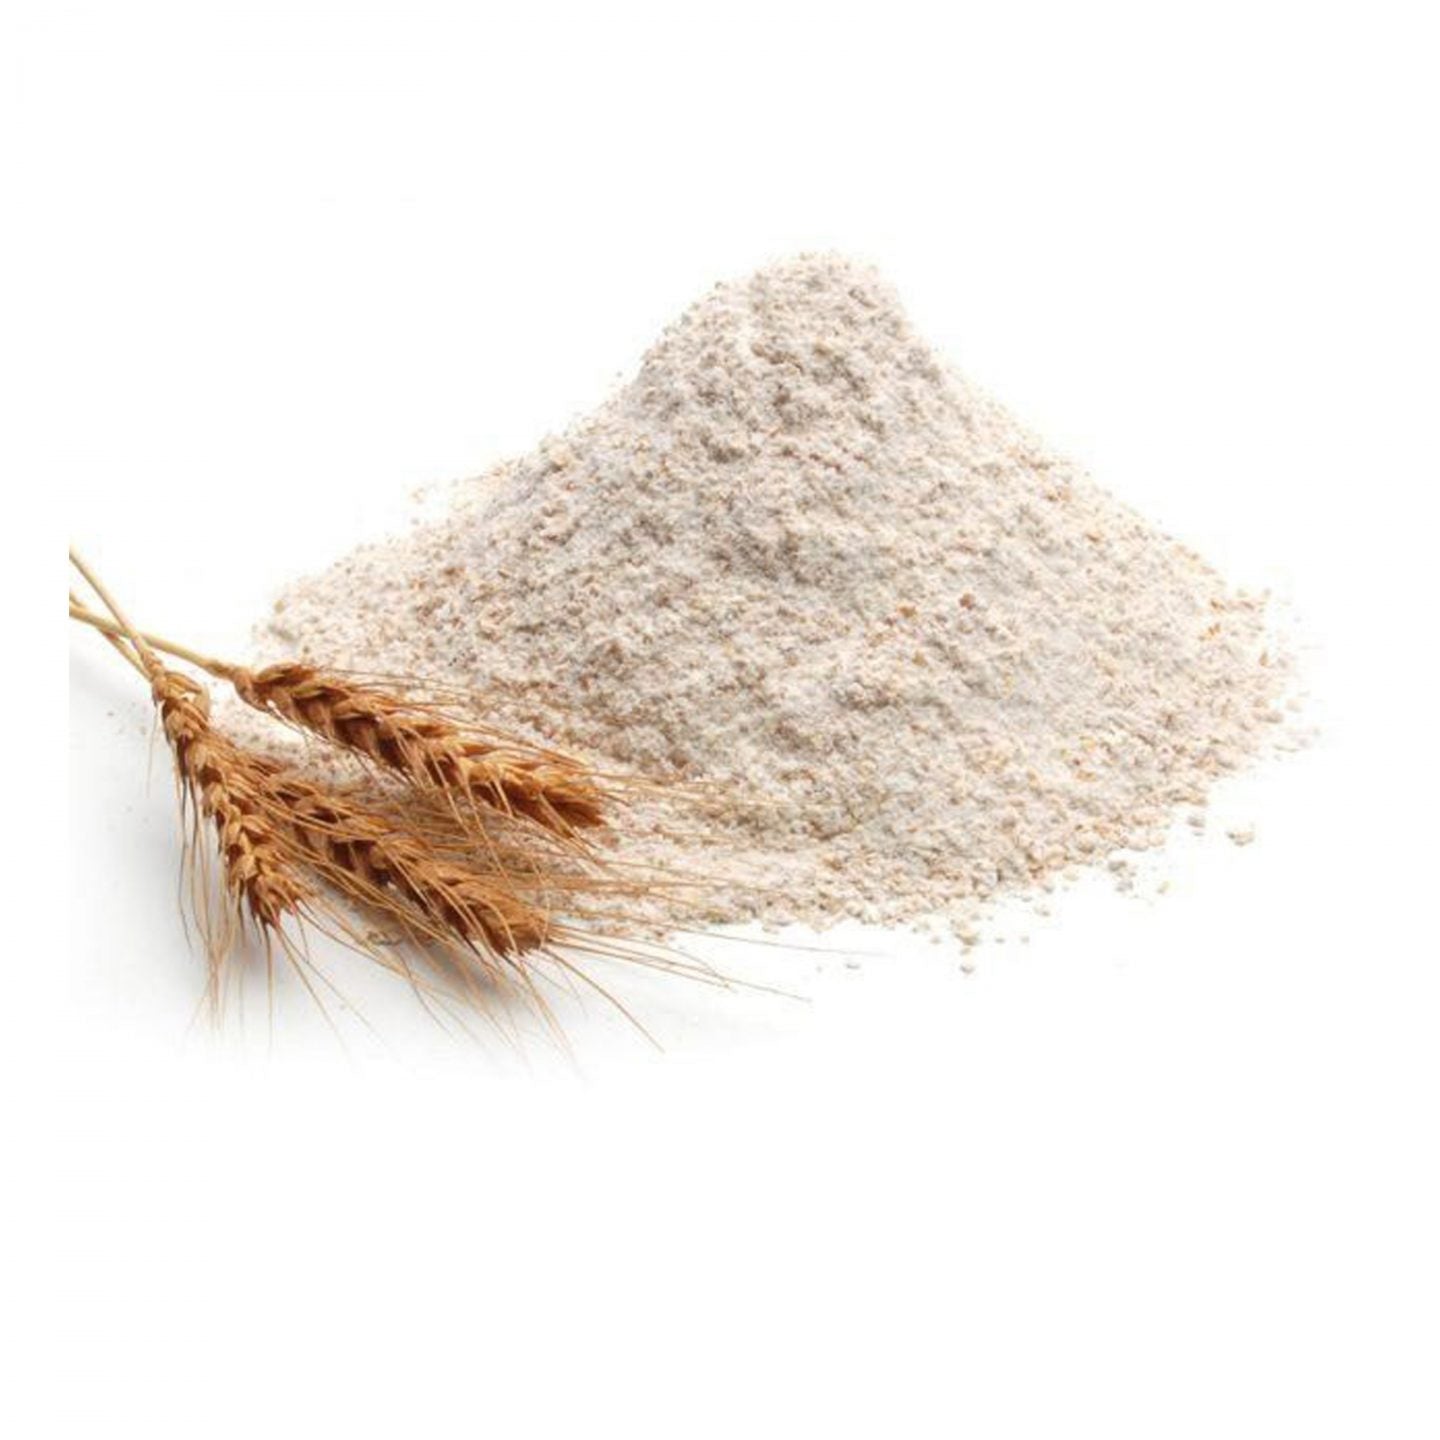 Farine de blé entier - Vrac